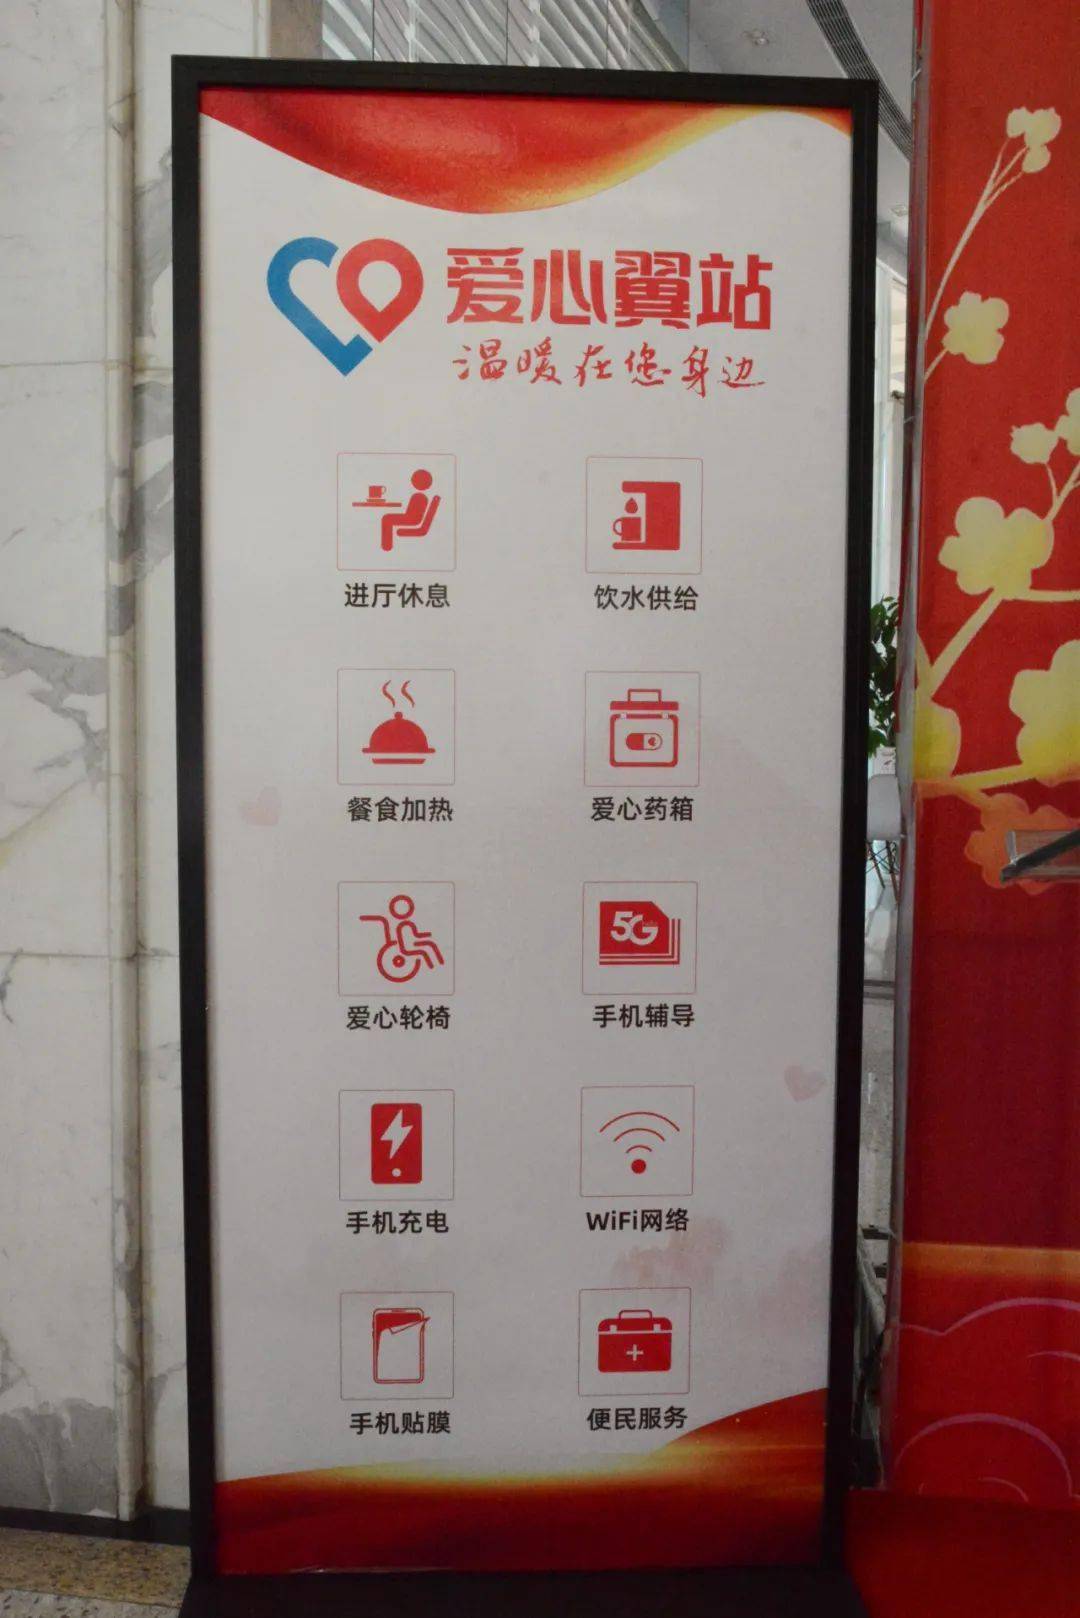 爱心翼站是由中华全国总工会携手中国电信集团共同推出的一项社会